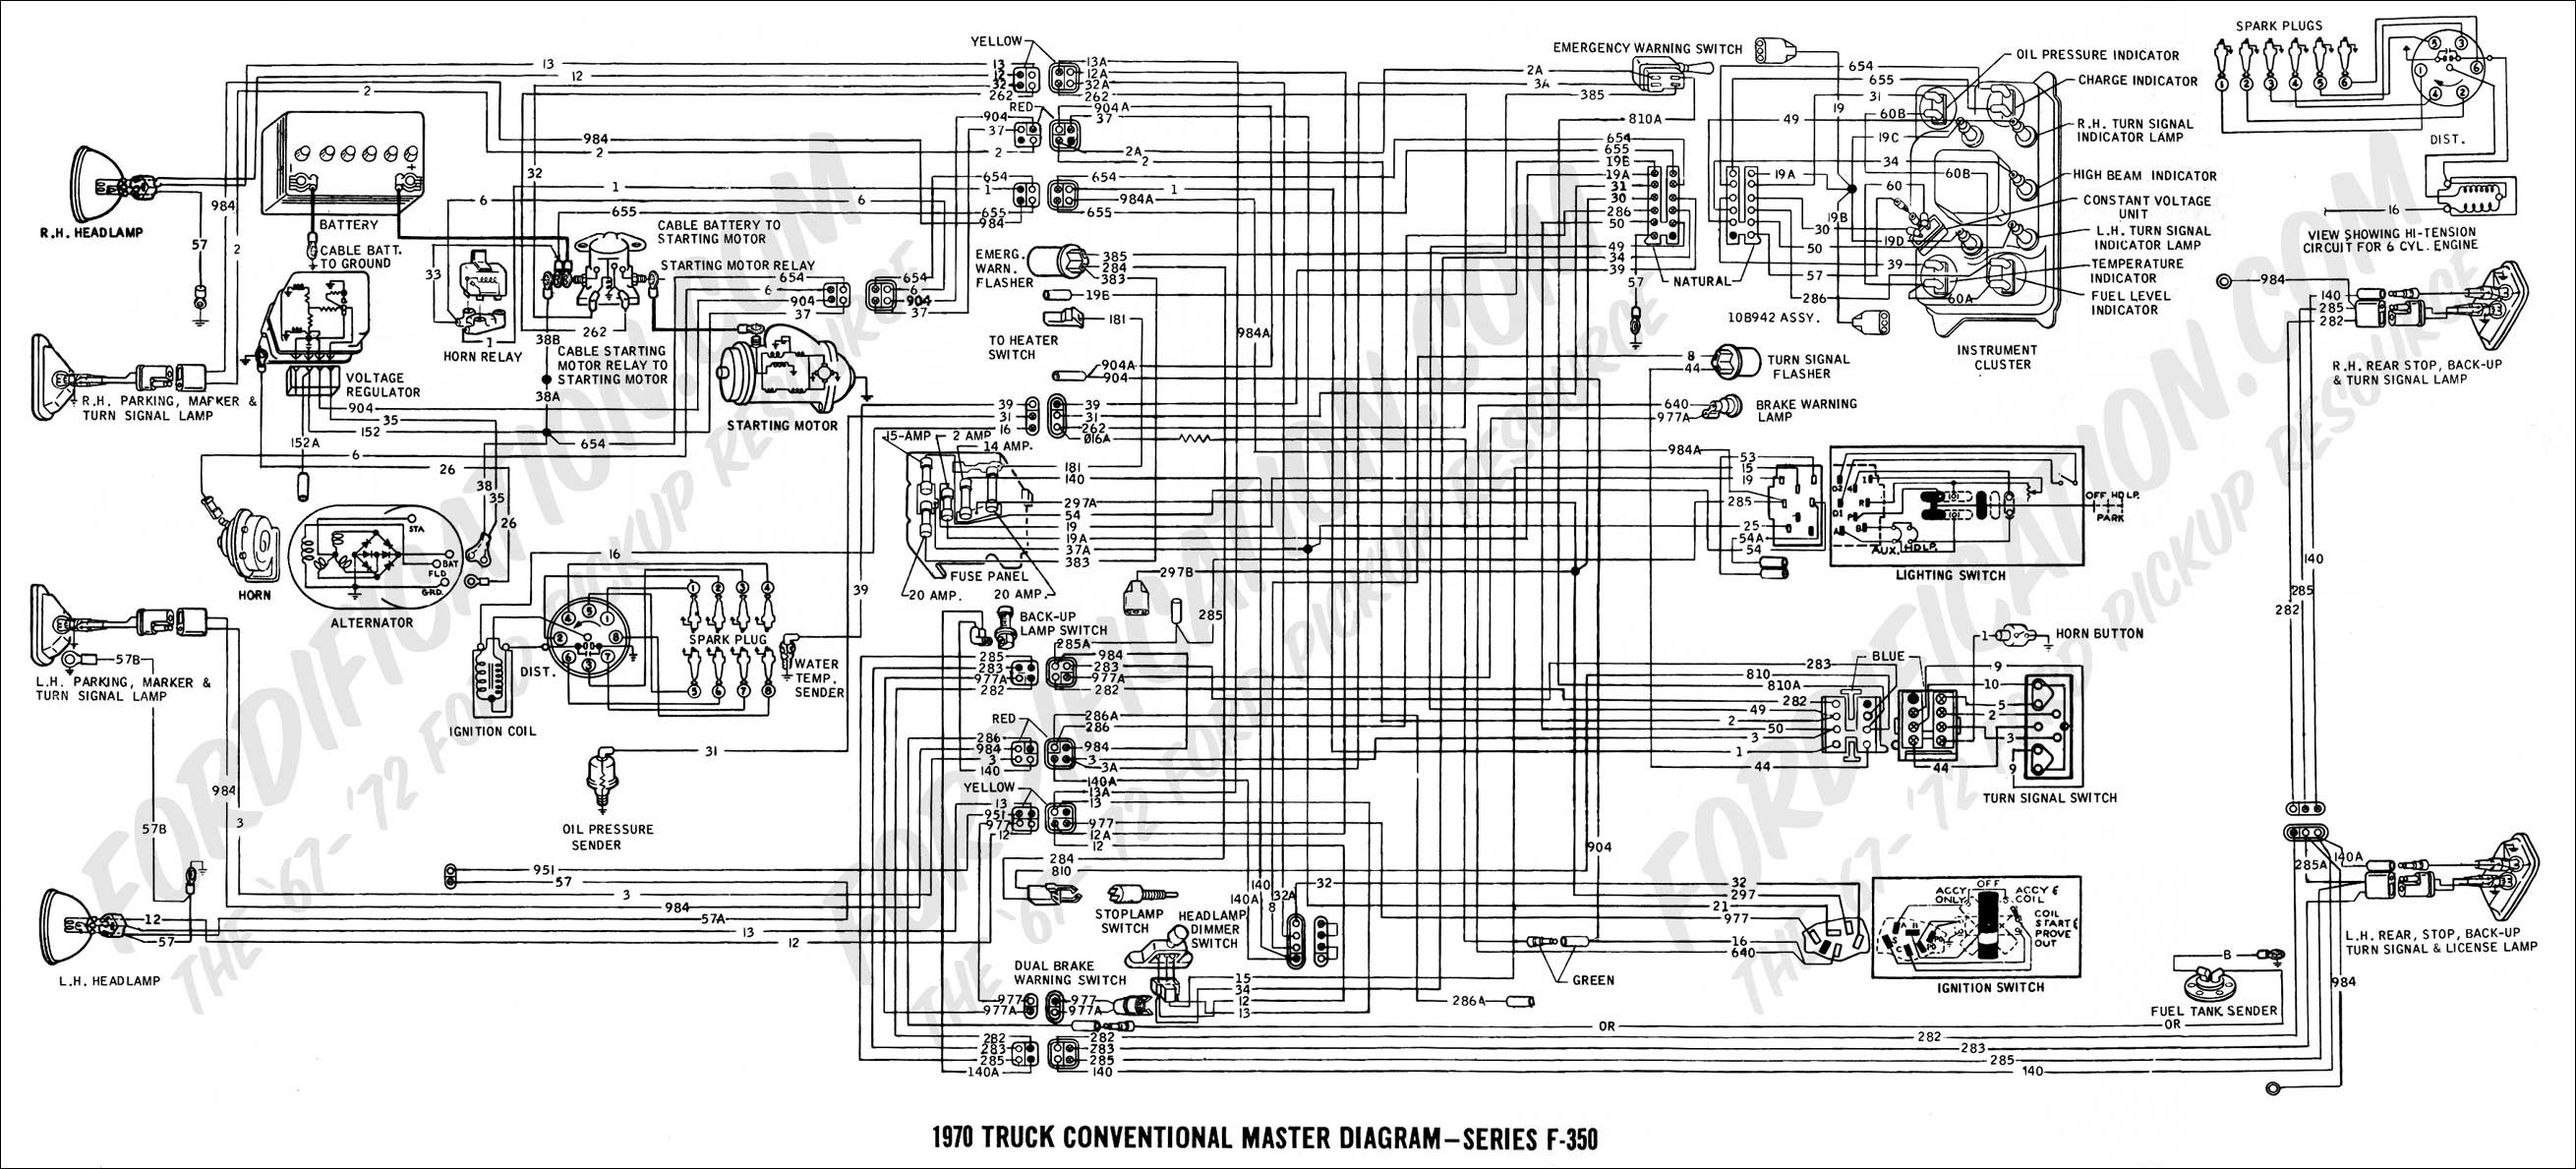 1968 Mustang Wiring Diagram Inspirational Turn Signal Wiring Diagram Diagram Of 1968 Mustang Wiring Diagram